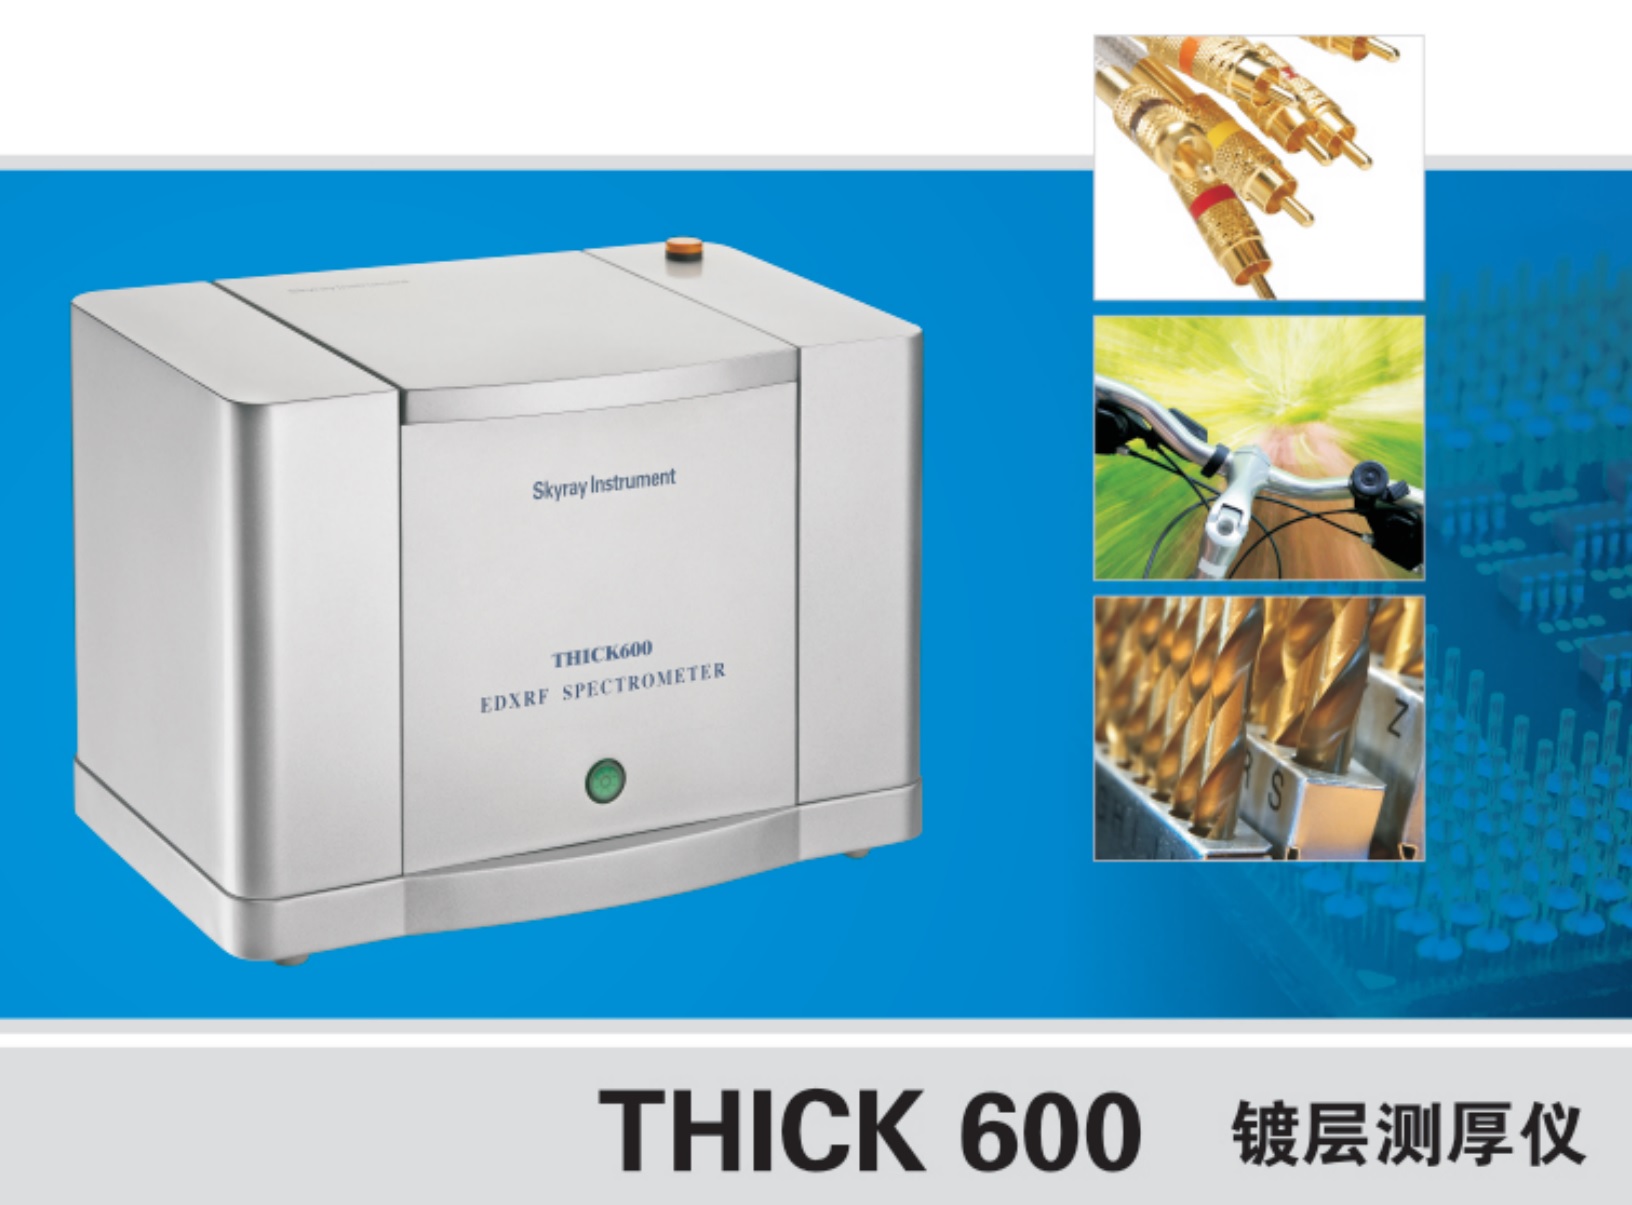 江苏天瑞仪器股份有限公司-镀层厚度测试仪 THICK600 